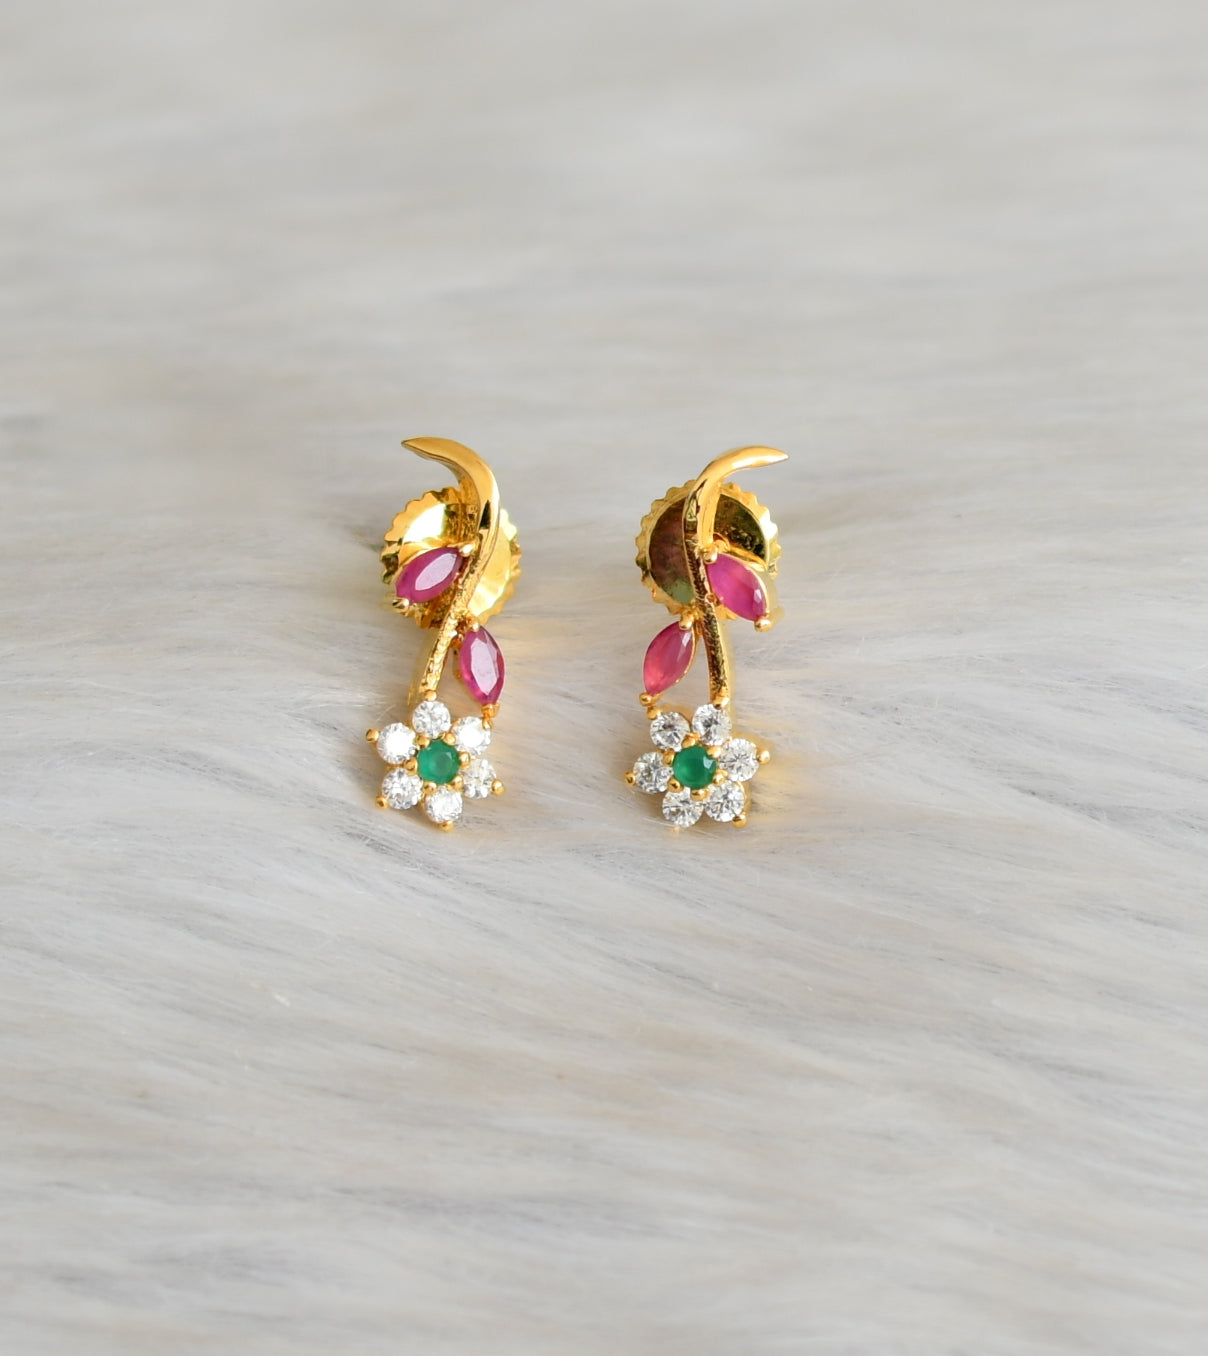 Gold tone cz ruby-green Nakshatra necklace set dj-03685